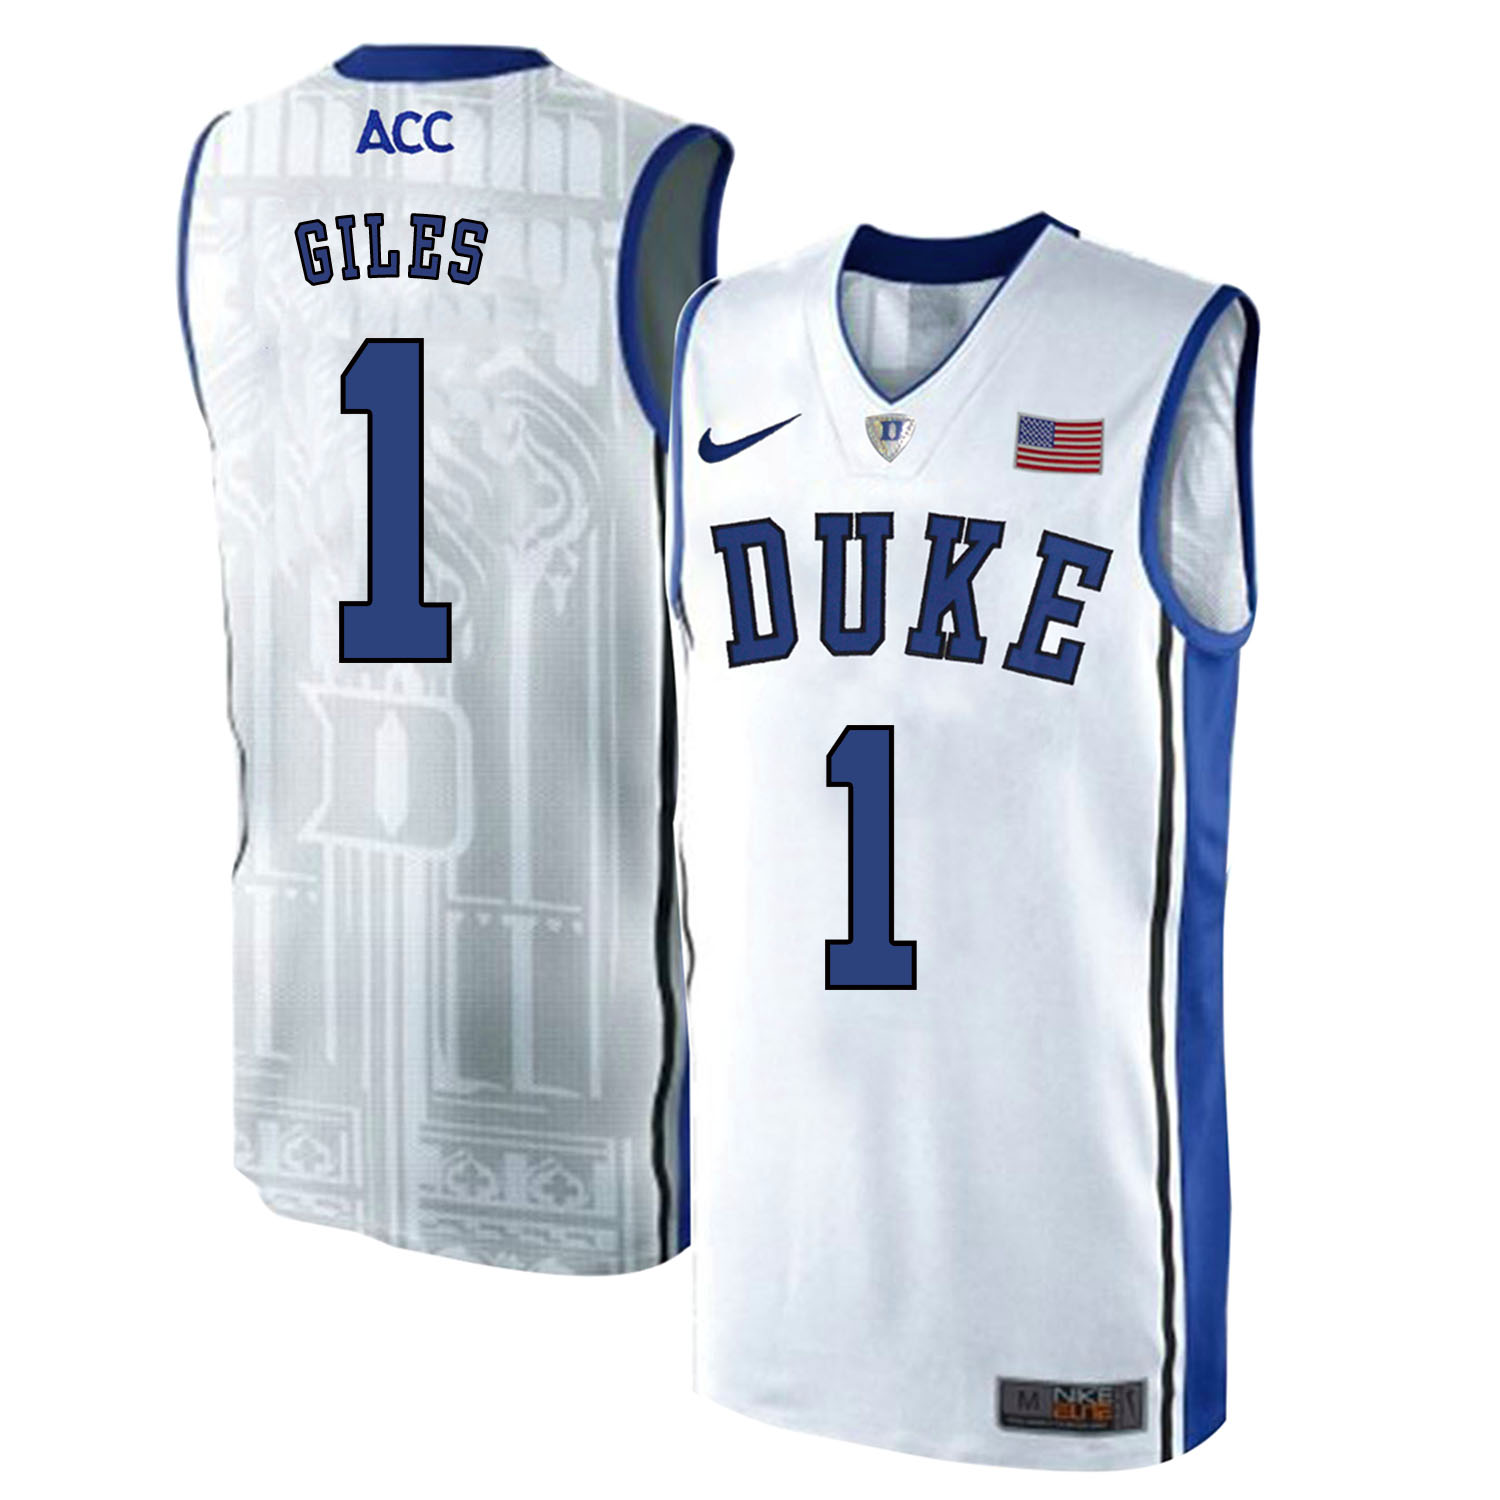 Duke Blue Devils 1 Harry Giles White Elite Nike College Basketball Jersey